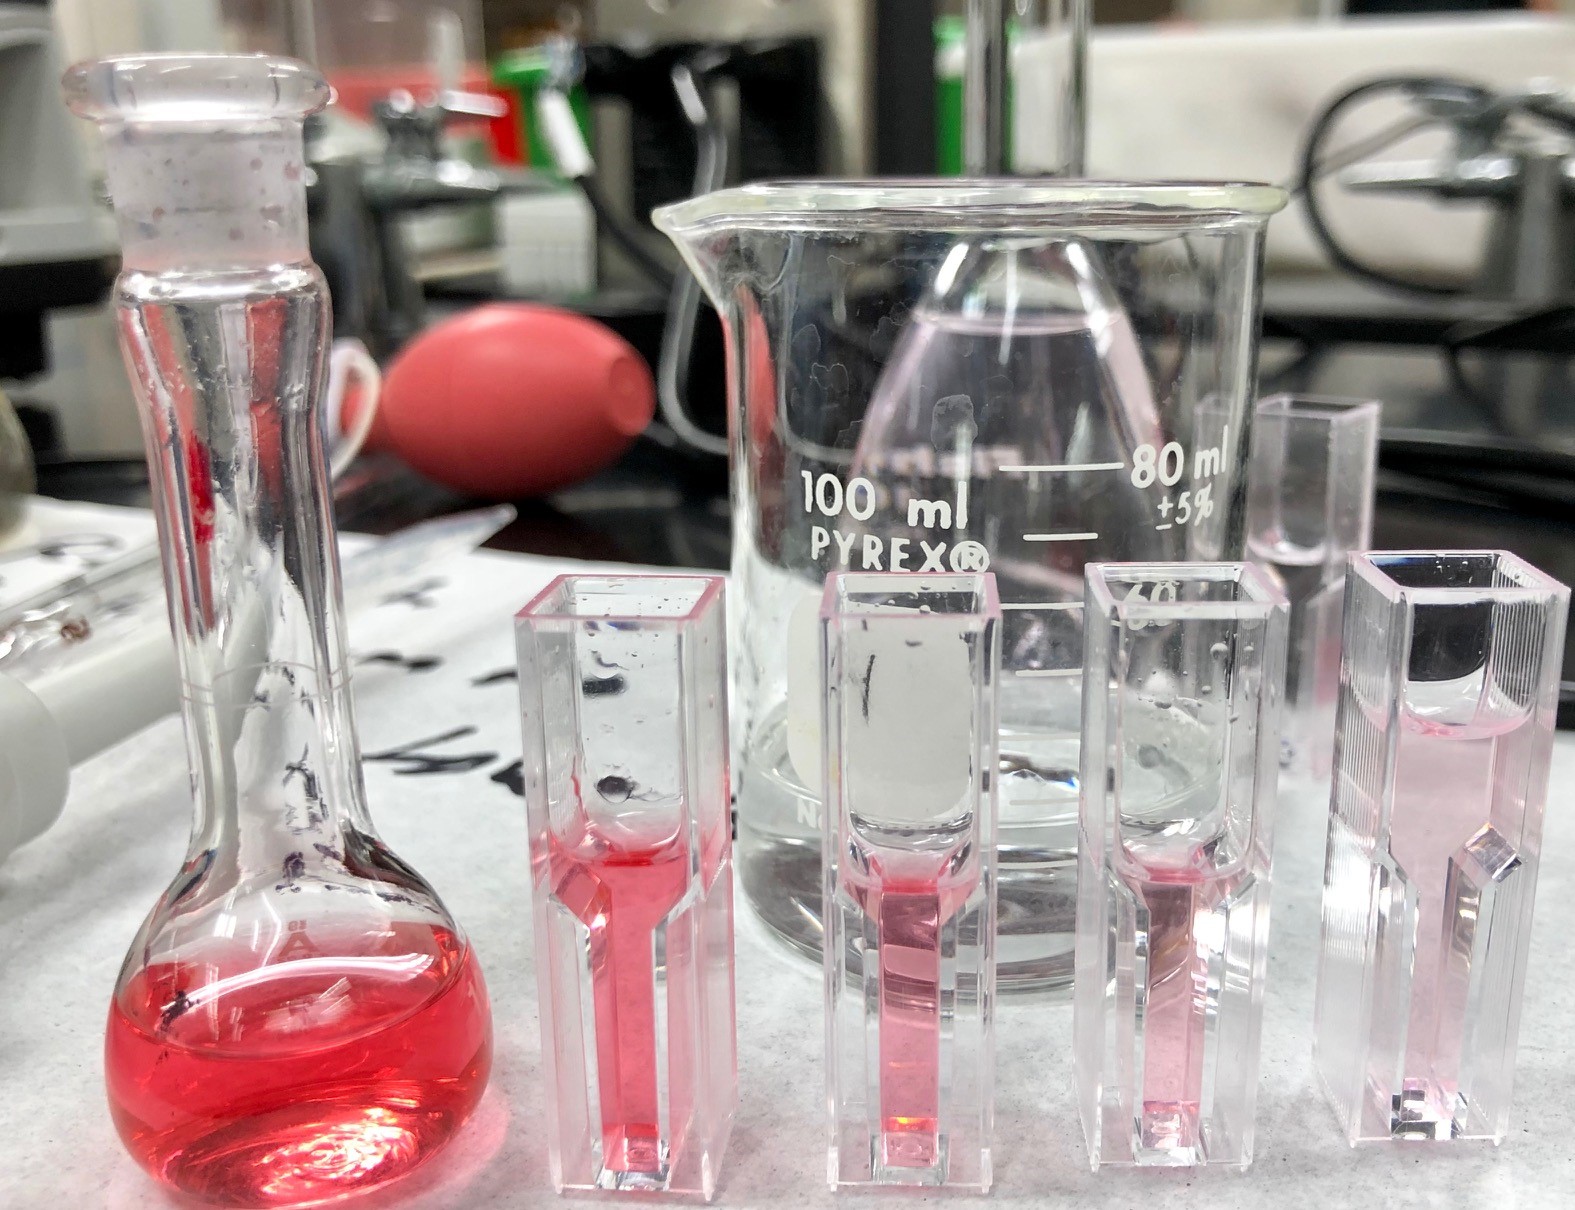 pink liquid in glass vials